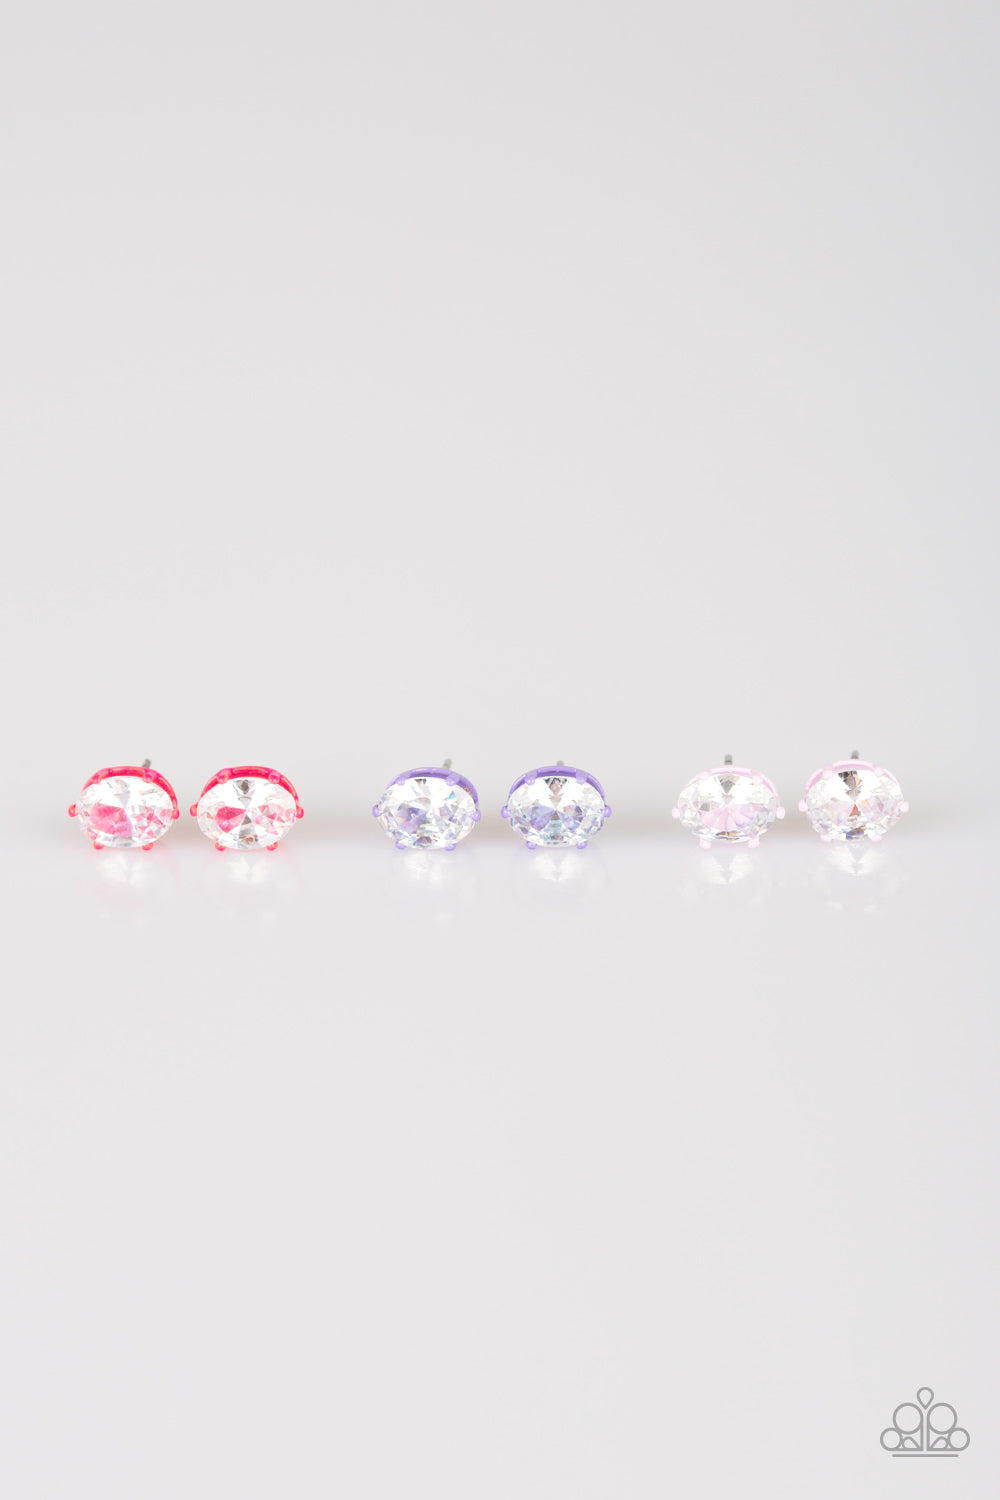 Starlet Shimmer Earring Kit 1 Paparazzi Earrings Cashmere Pink Jewels - Cashmere Pink Jewels & Accessories, Cashmere Pink Jewels & Accessories - Paparazzi